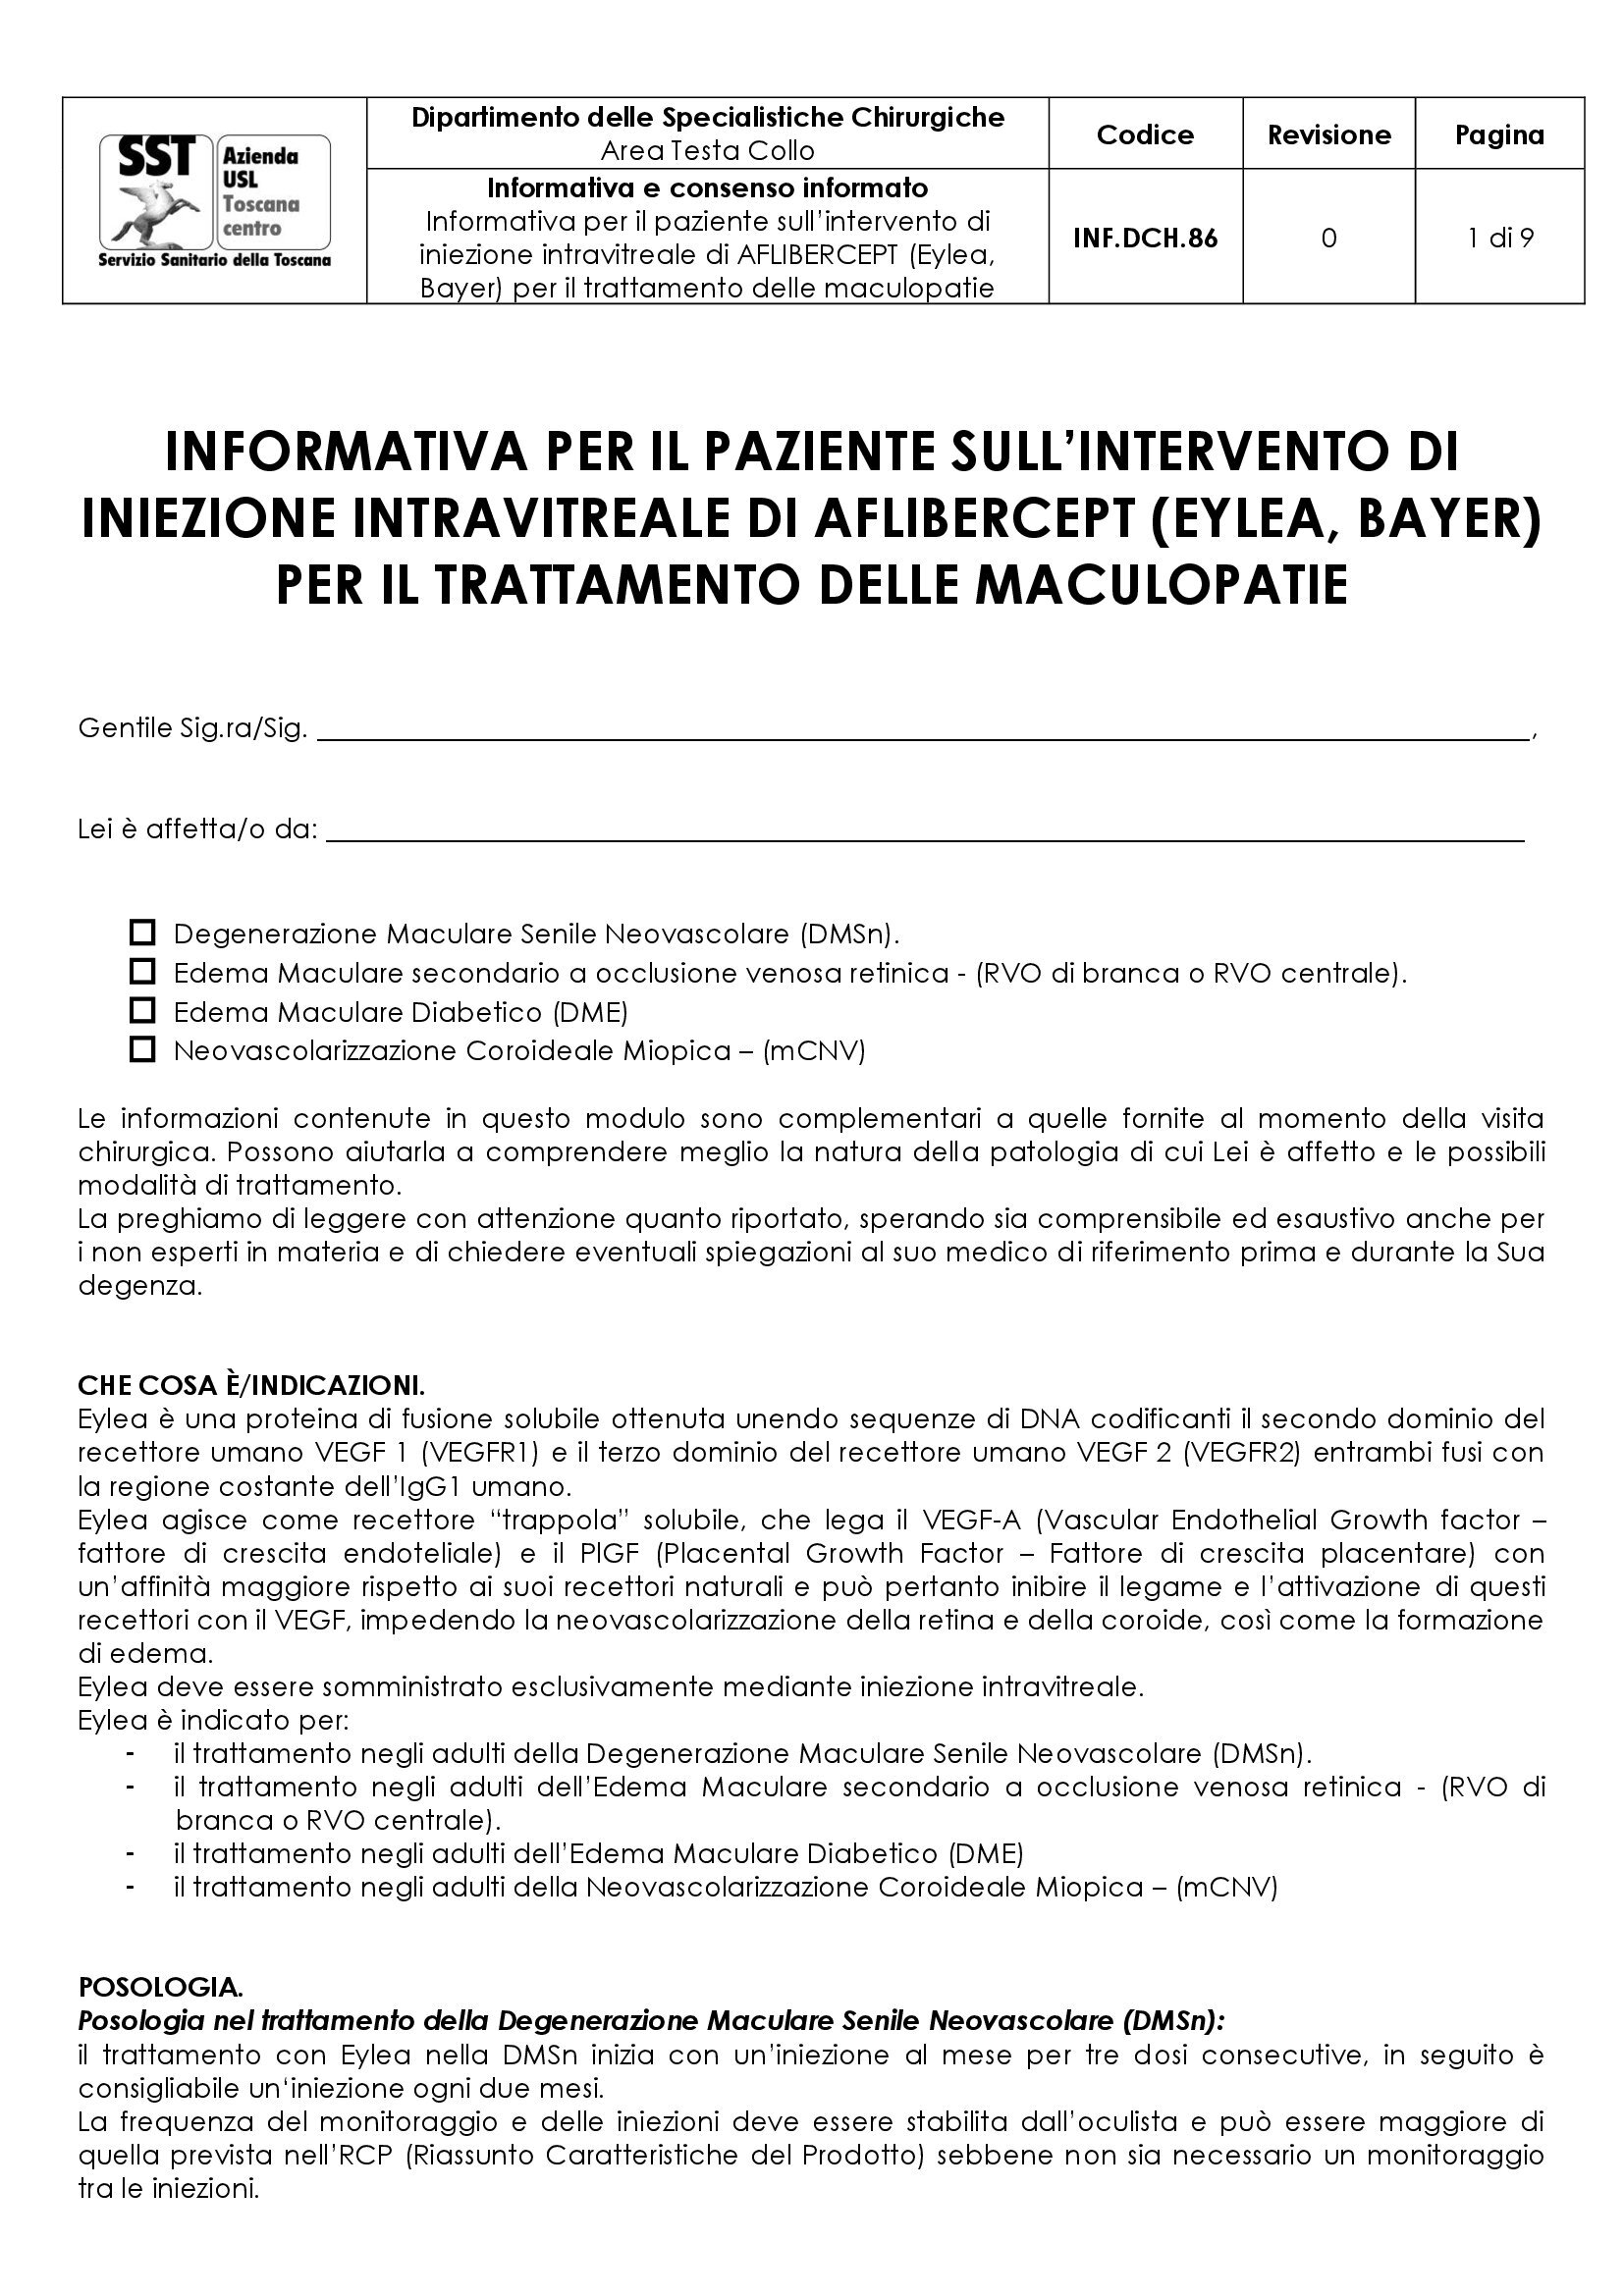 INF.DCH.86 Informativa per il paziente sull’intervento di iniezione intravitreale di AFLIBERCEPT (Eylea, Bayer) per il trattamento delle maculopatie